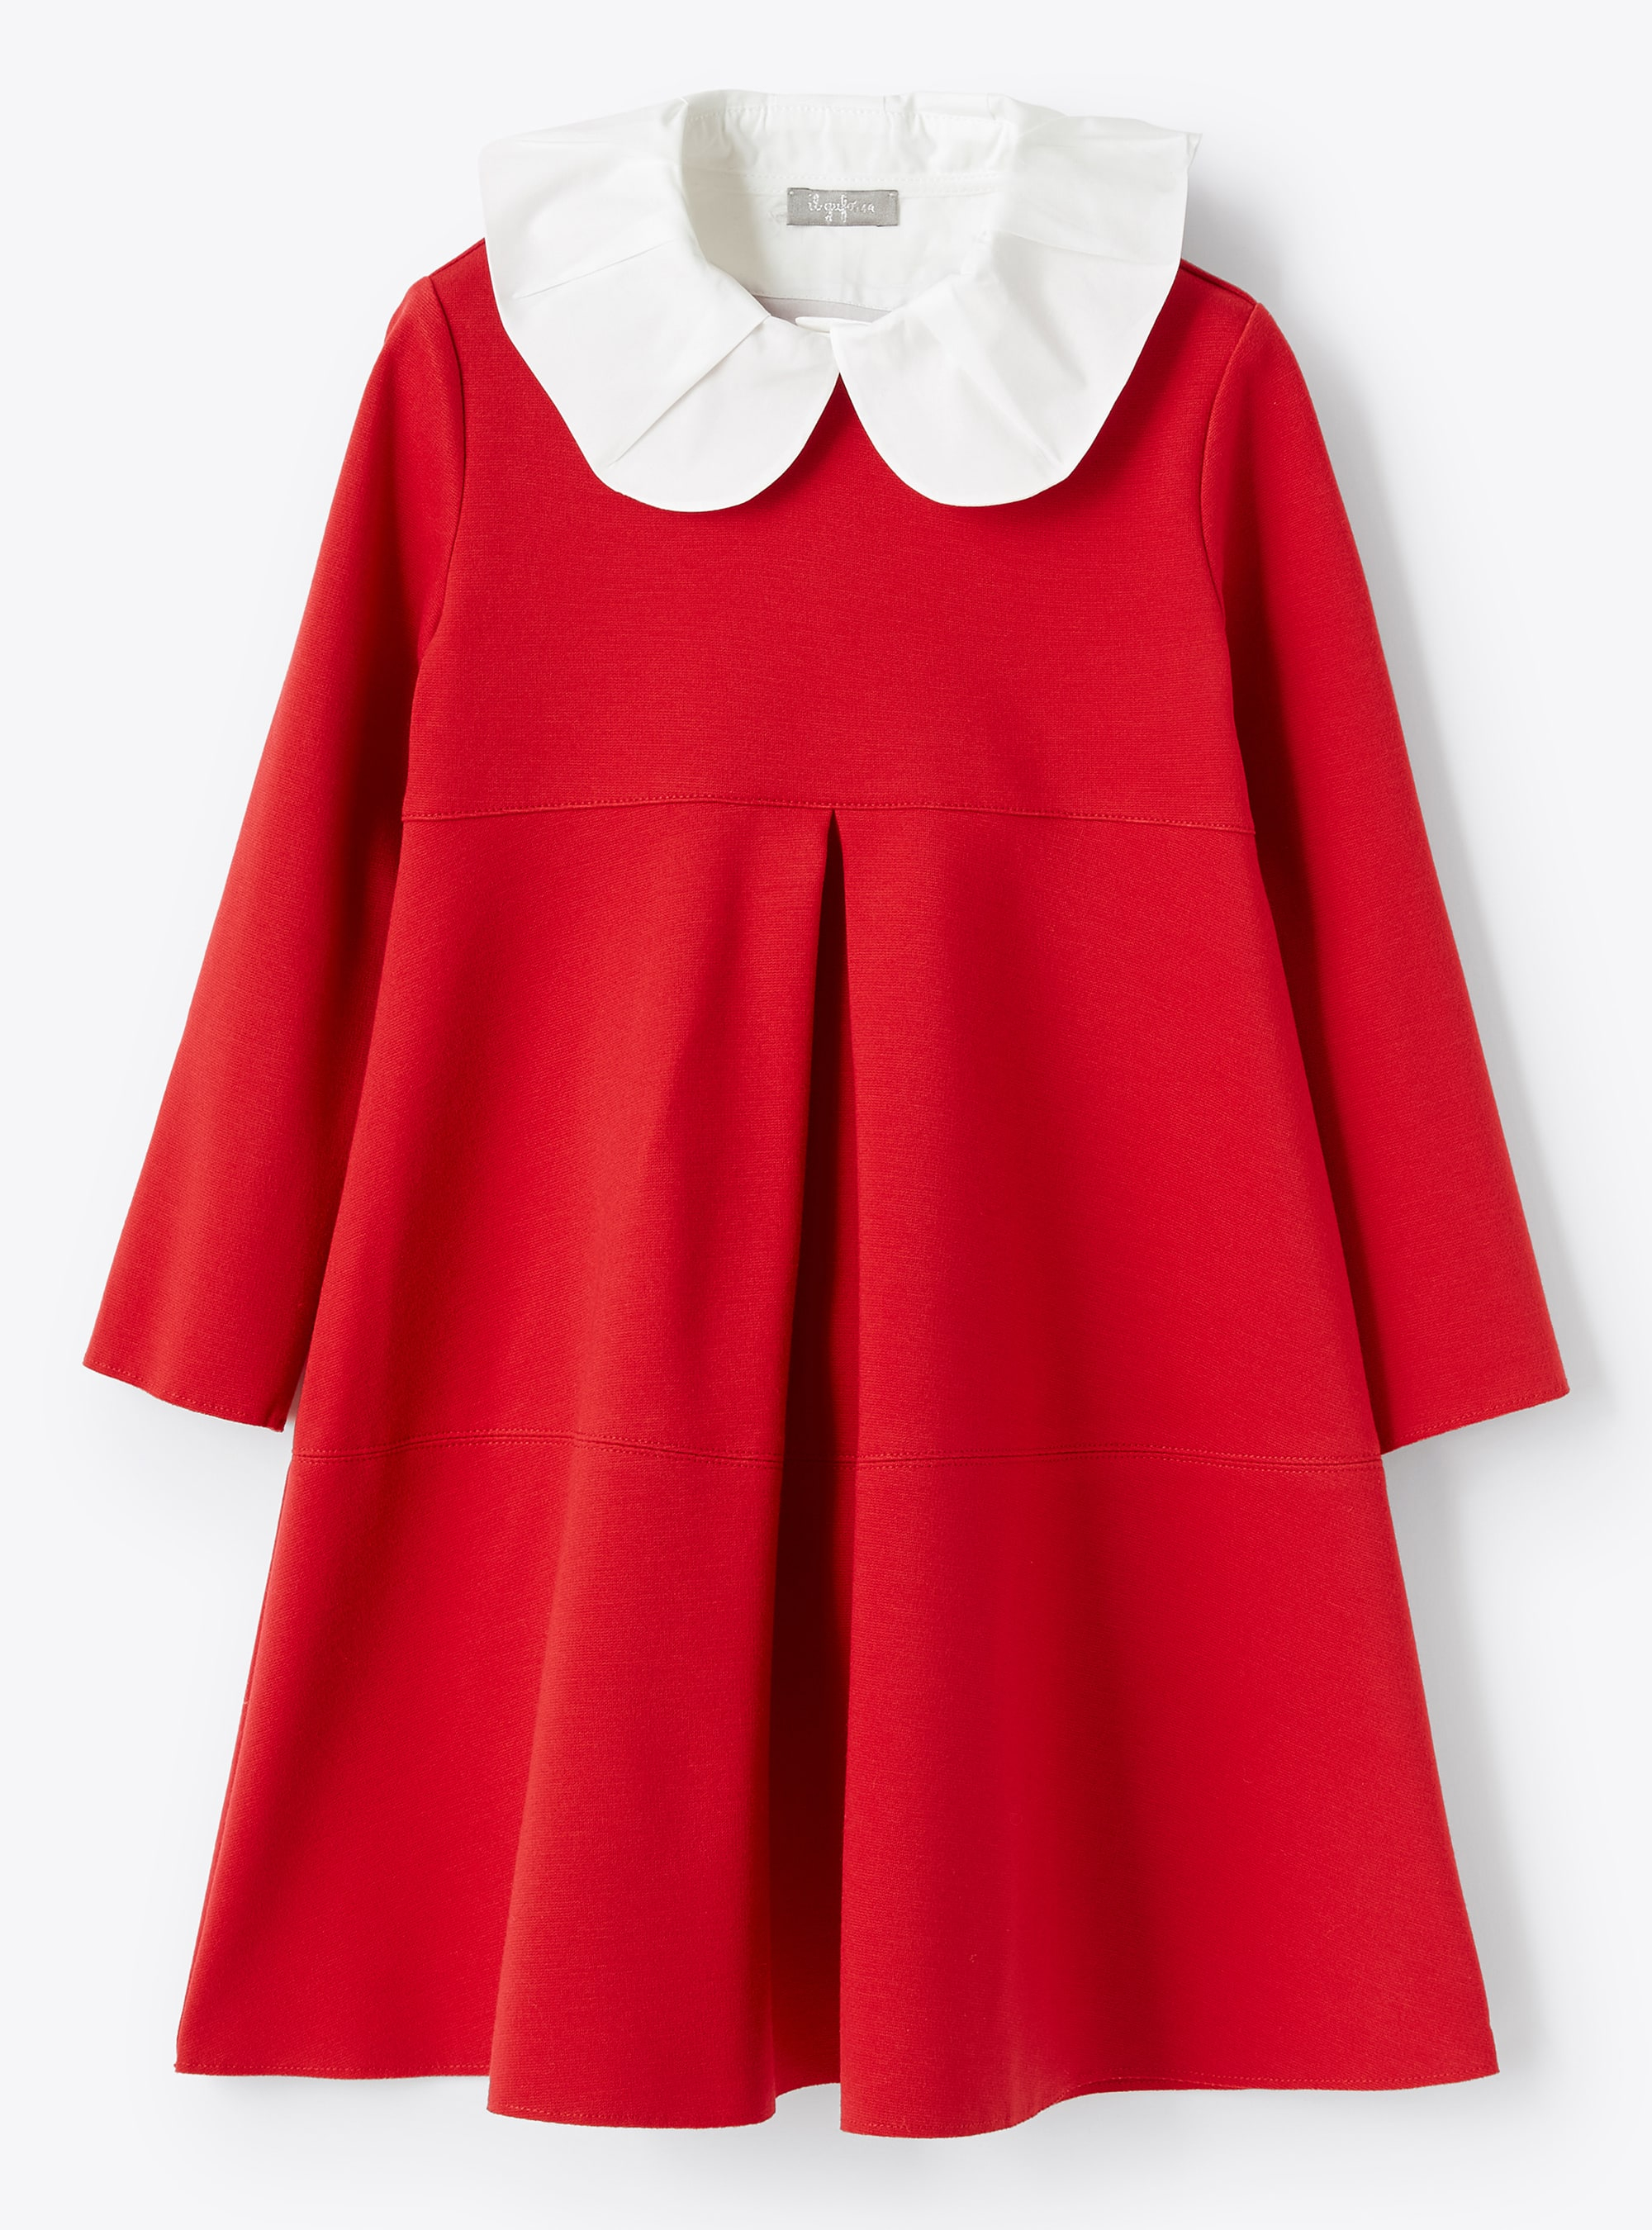 Box pleat red dress - Dresses - Il Gufo